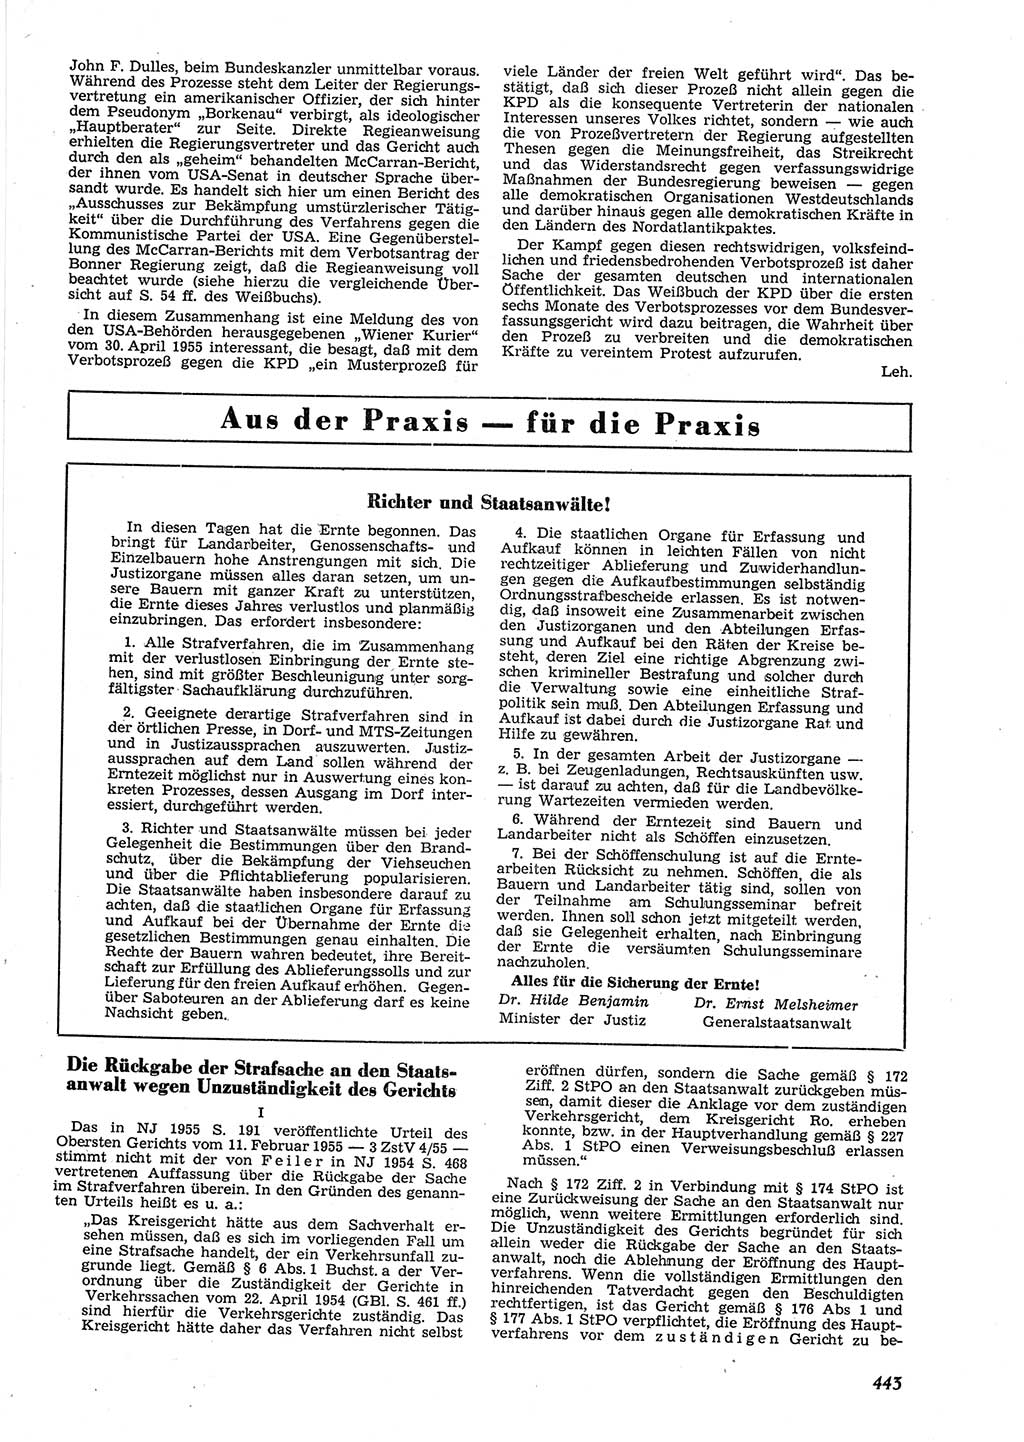 Neue Justiz (NJ), Zeitschrift für Recht und Rechtswissenschaft [Deutsche Demokratische Republik (DDR)], 9. Jahrgang 1955, Seite 443 (NJ DDR 1955, S. 443)